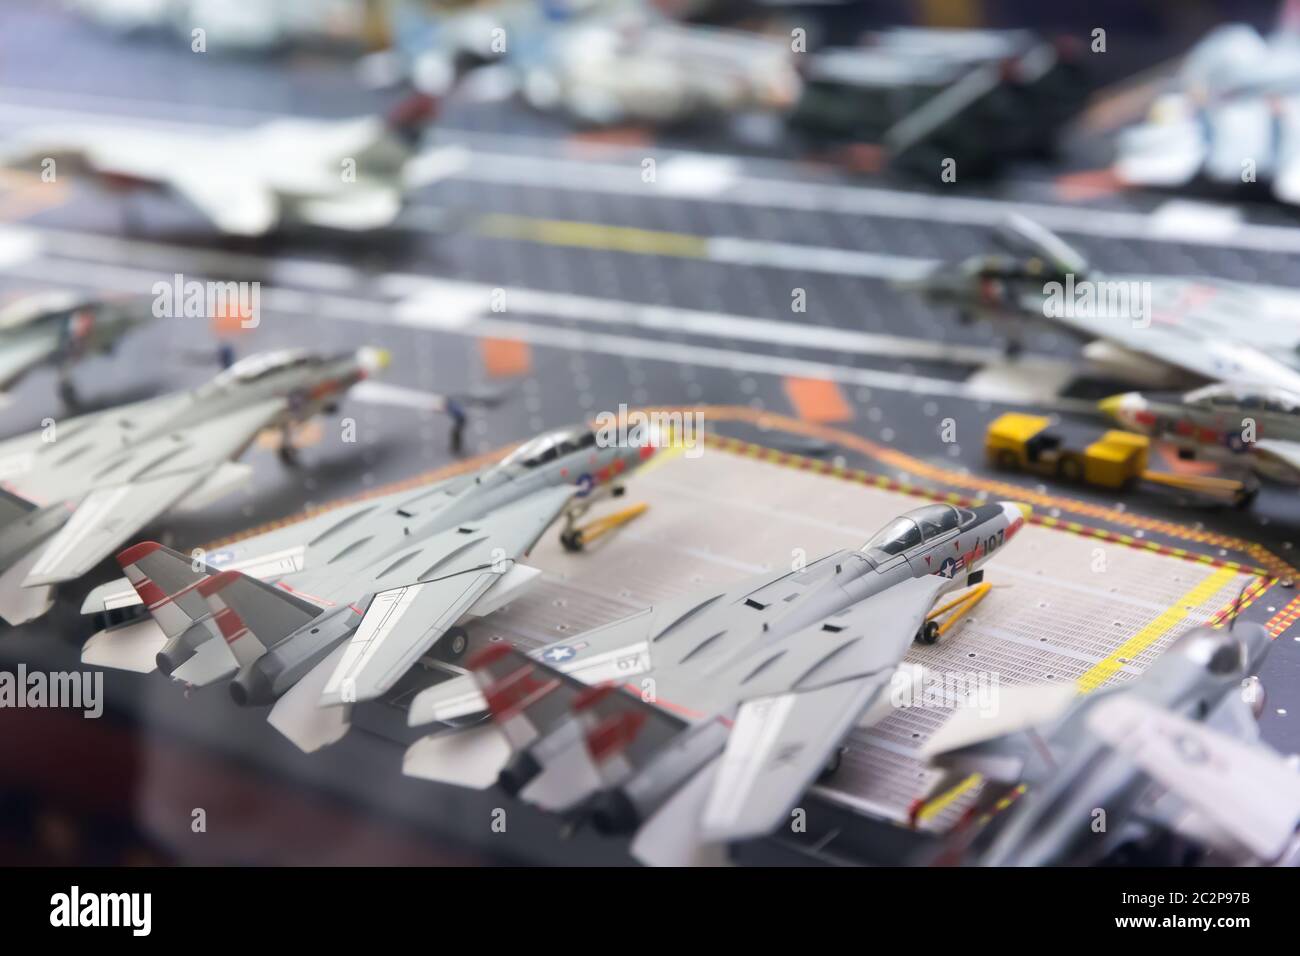 Modello in miniatura di pista portaerei con aerei e personaggi. Foto Stock